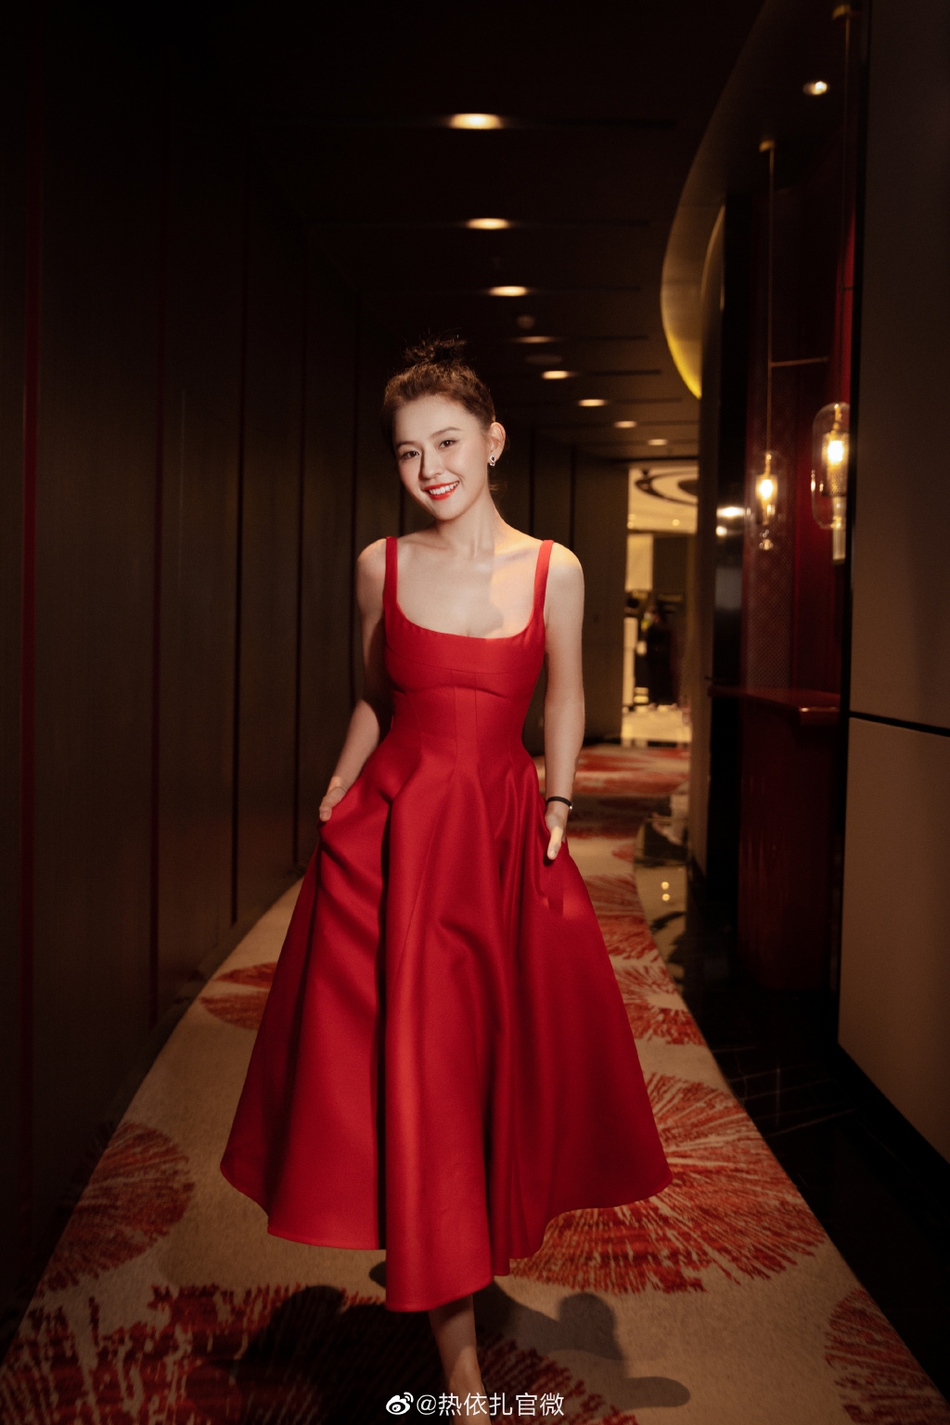 热依扎吊带红裙散发优雅魅力写真  第4张